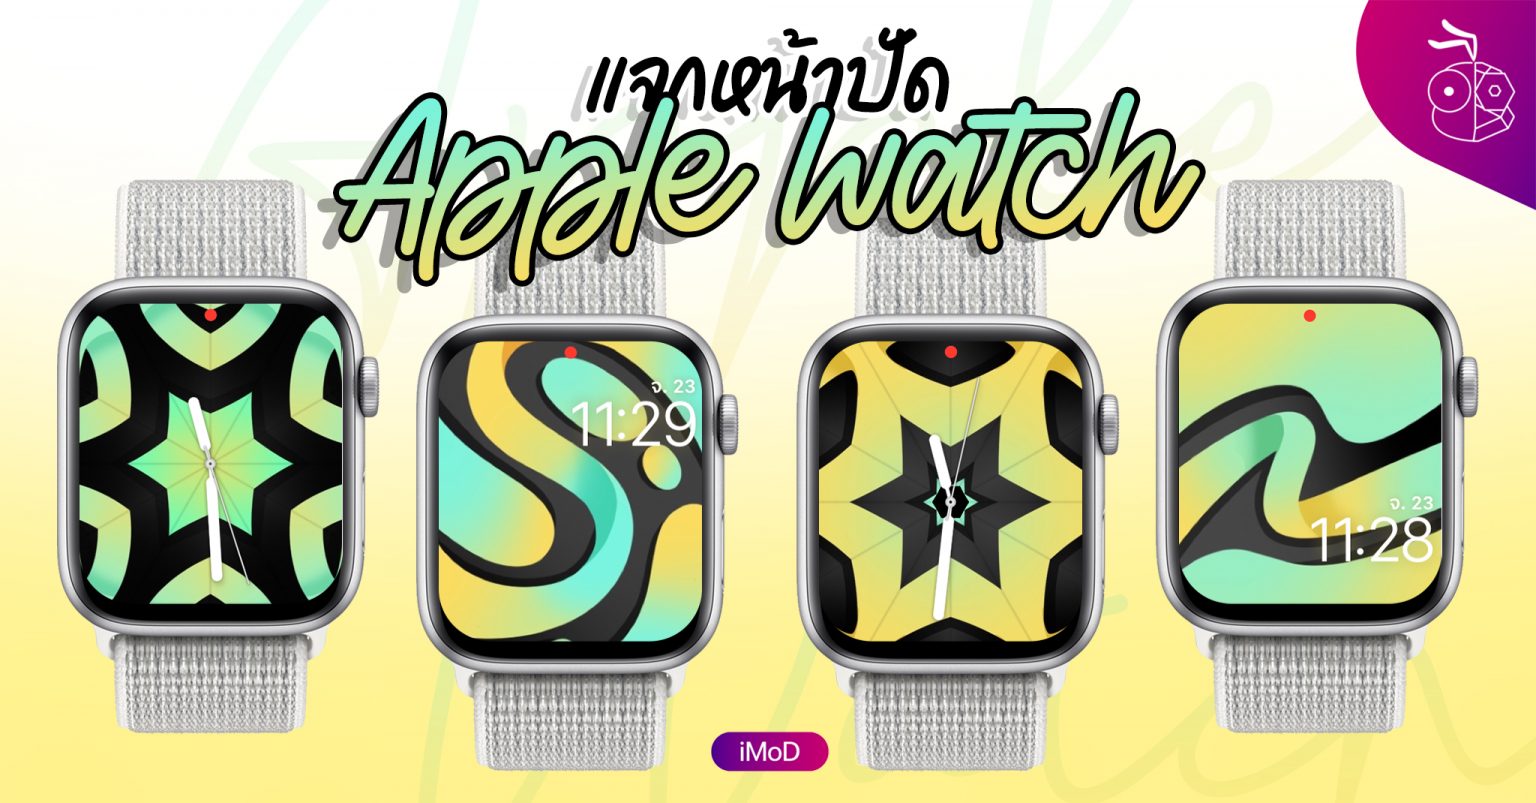 ภาพพื้นหลัง (Wallpaper) สำหรับ Apple Watch ชุด Dancing Line